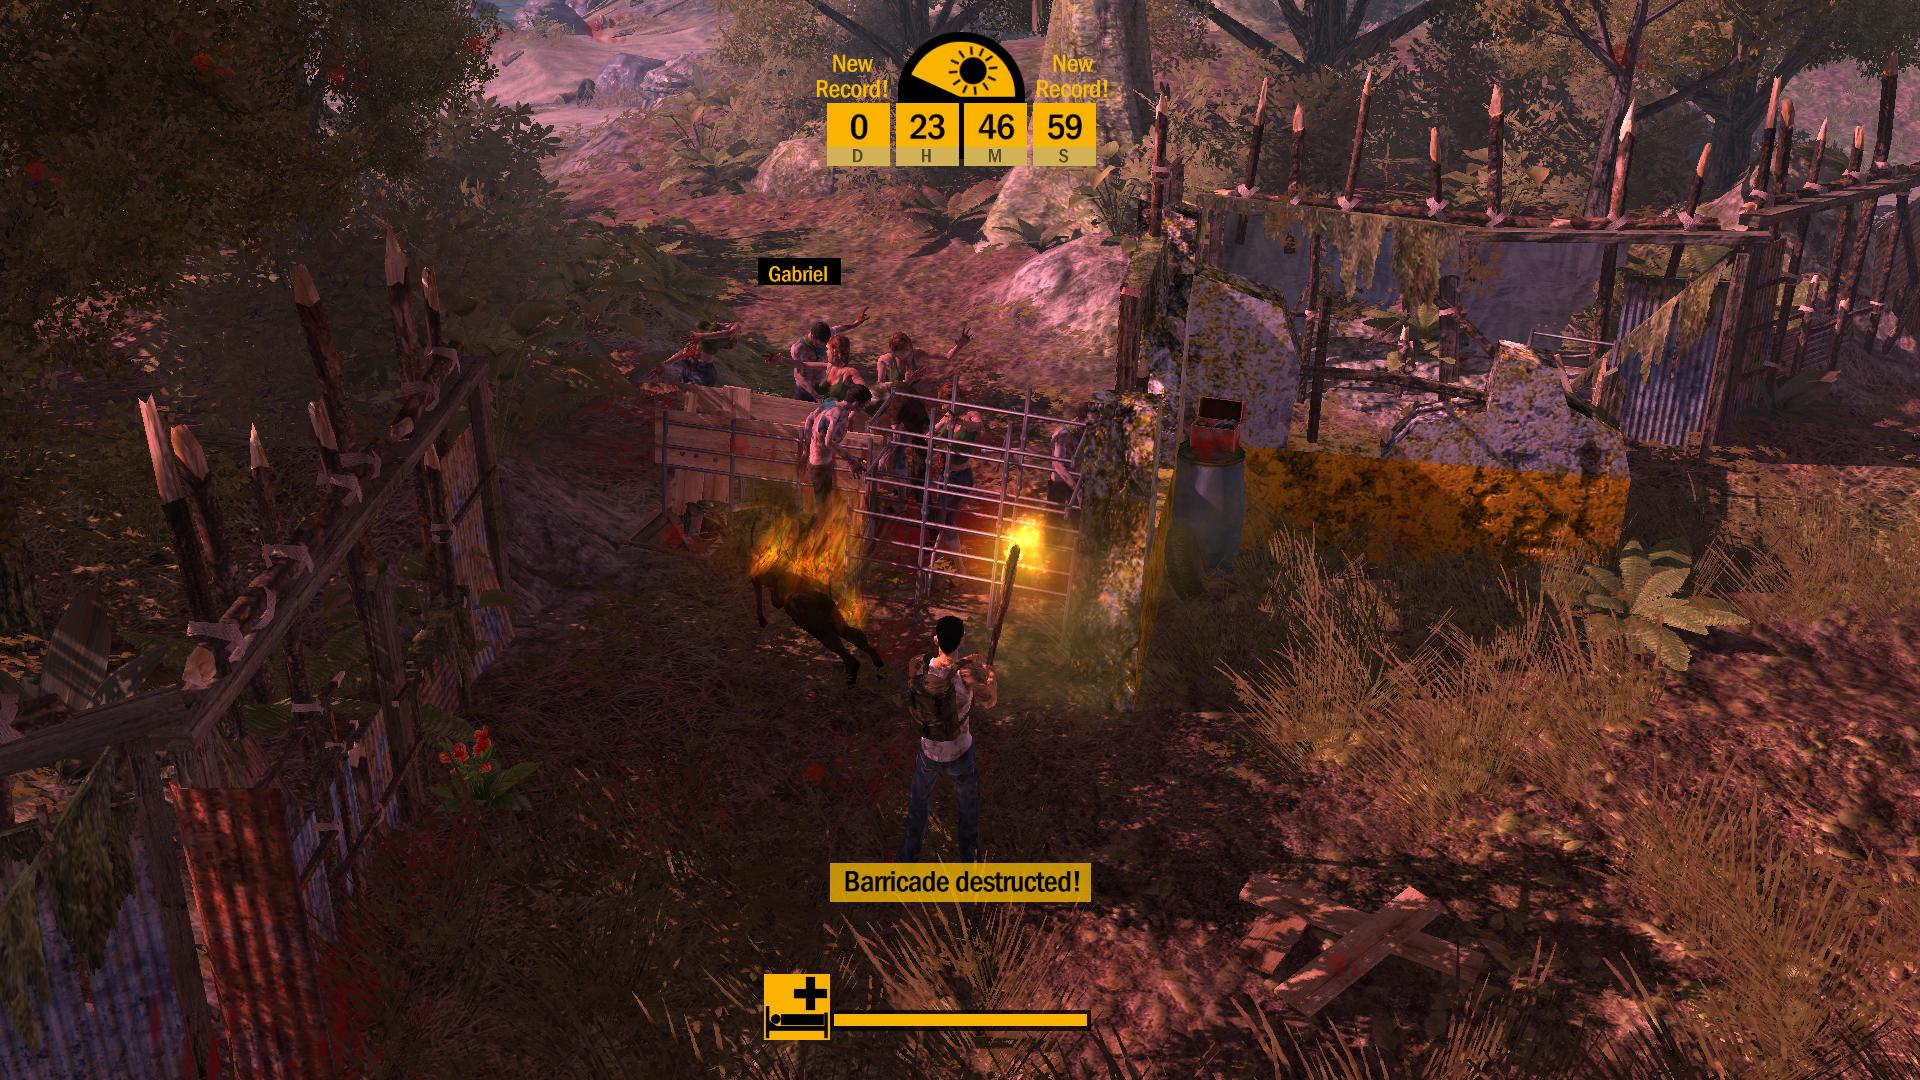 Barricade! DLC Featured Screenshot #1